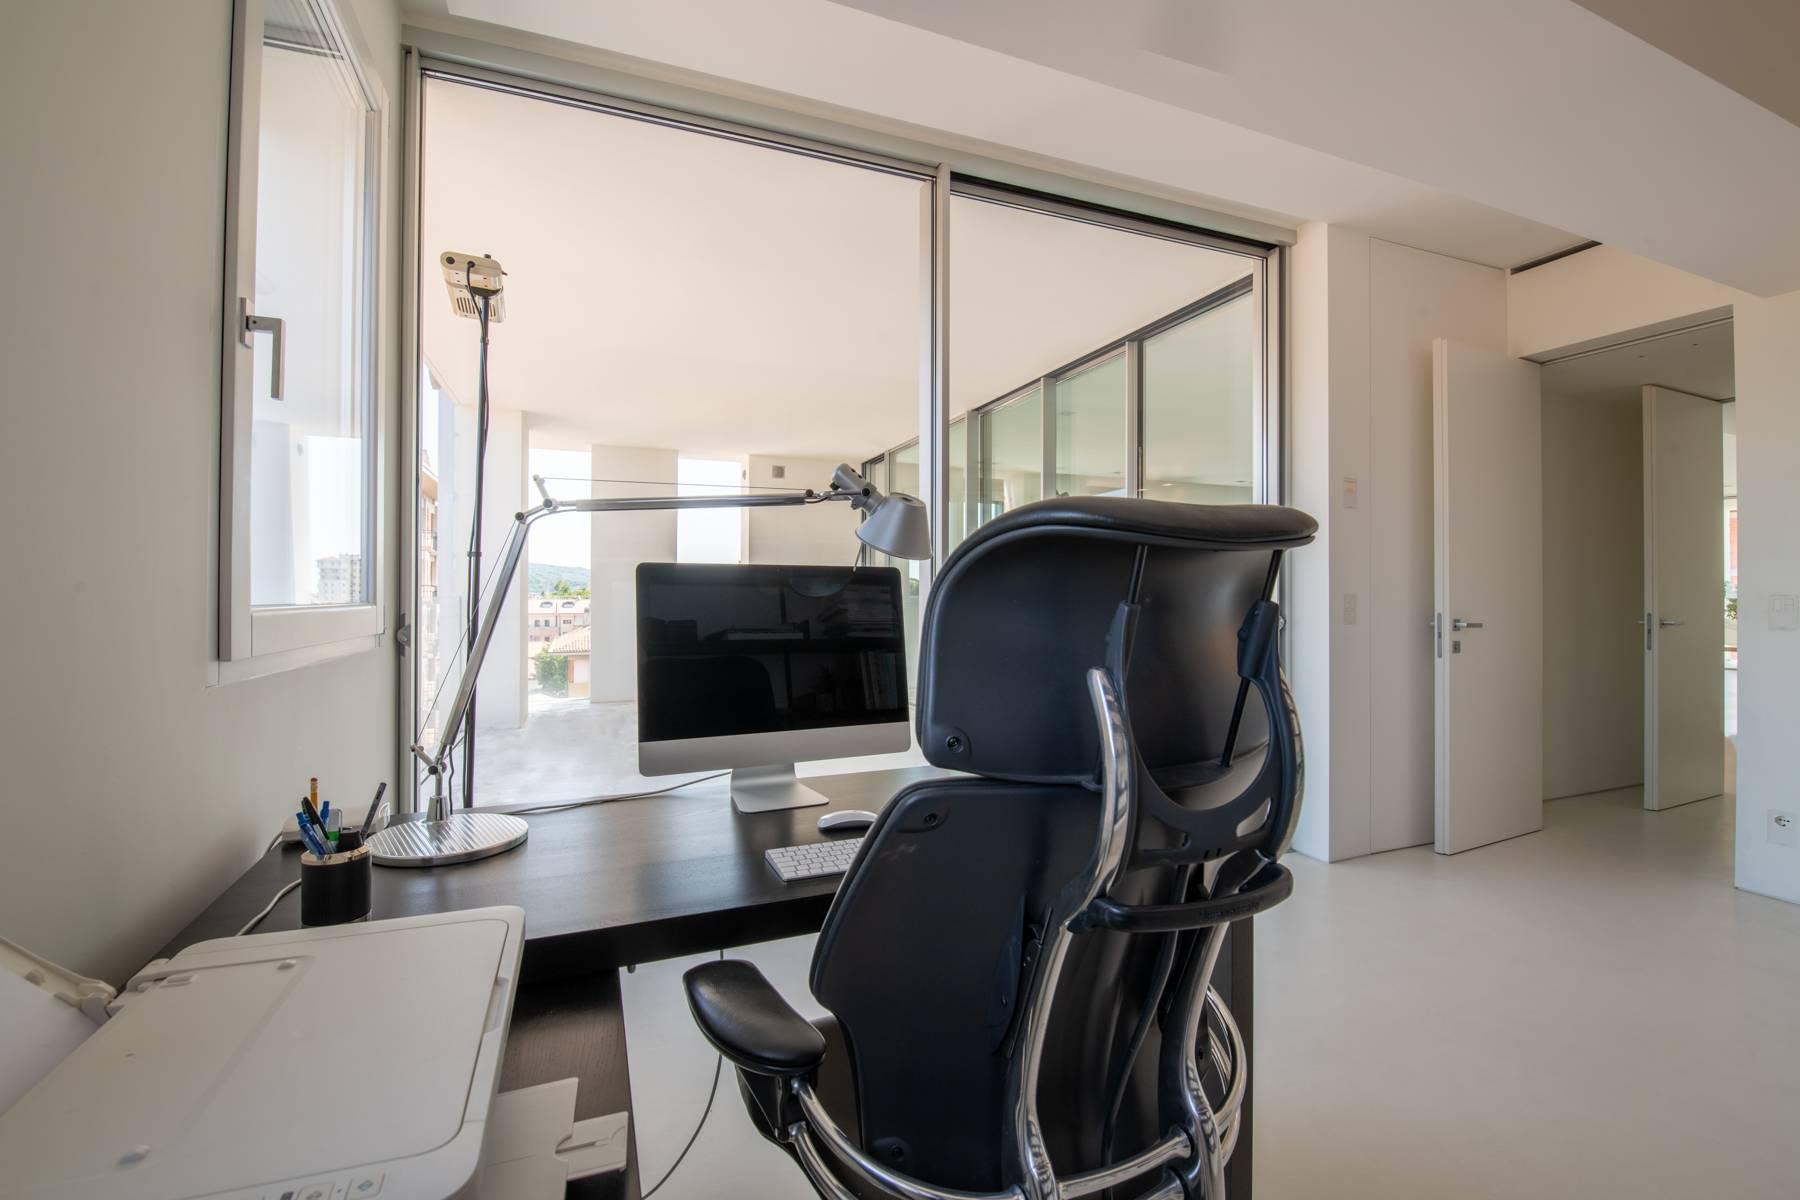 Penthouse élégant panoramique et à haute efficacité énergétique avec un design moderne raffiné - 11